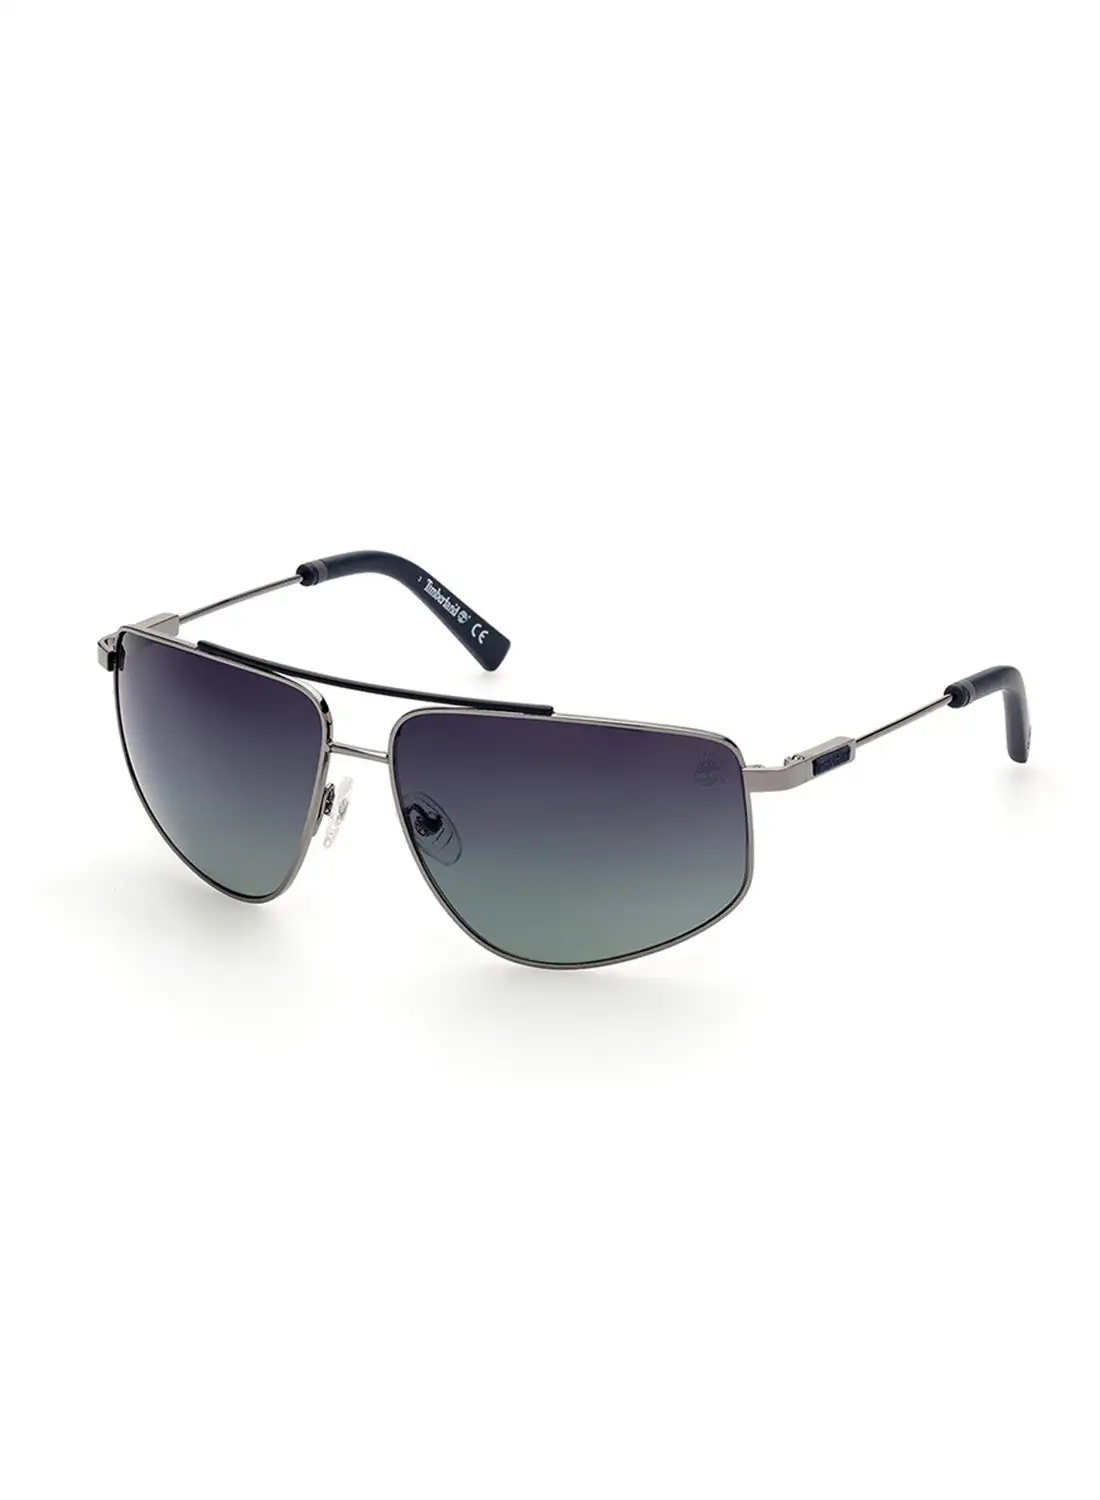 Timberland Men's Polarized Navigator Shape Sunglasses - TB926907D62 - Lens Size: 62 Mm